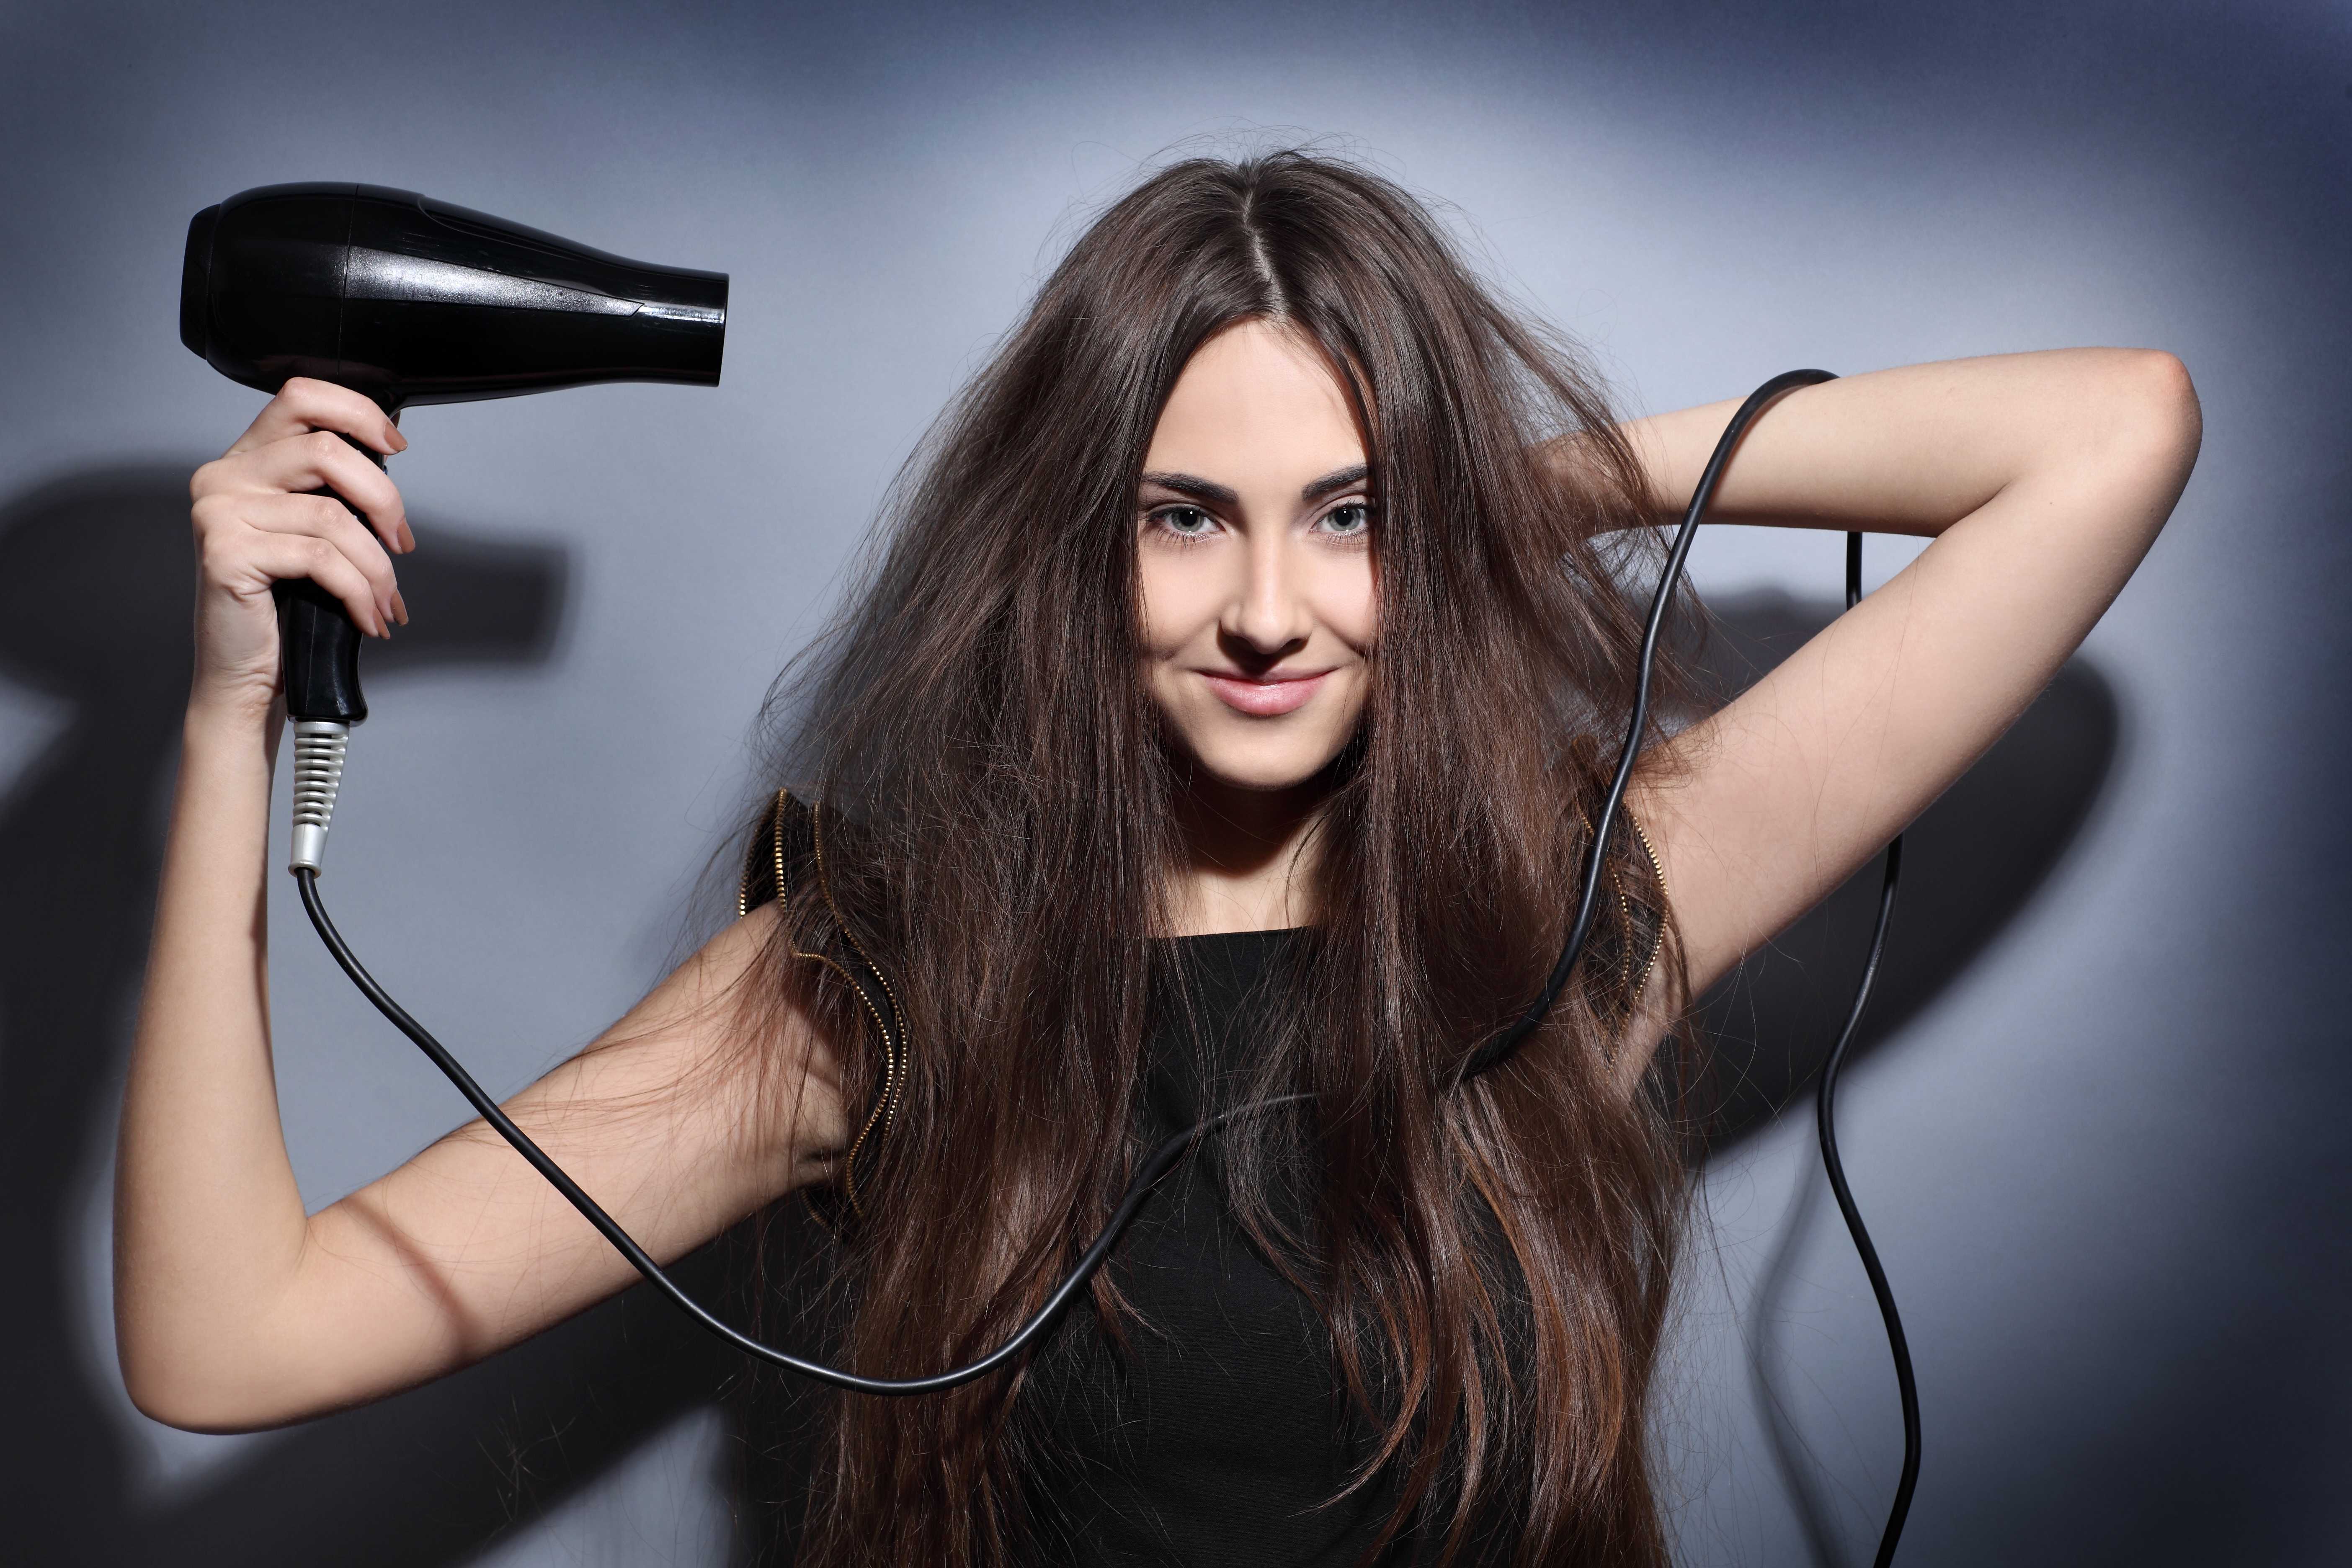 Как полезнее сушить волосы: феном или естественным путем. моем, сушим и расчесываем волосы правильно.